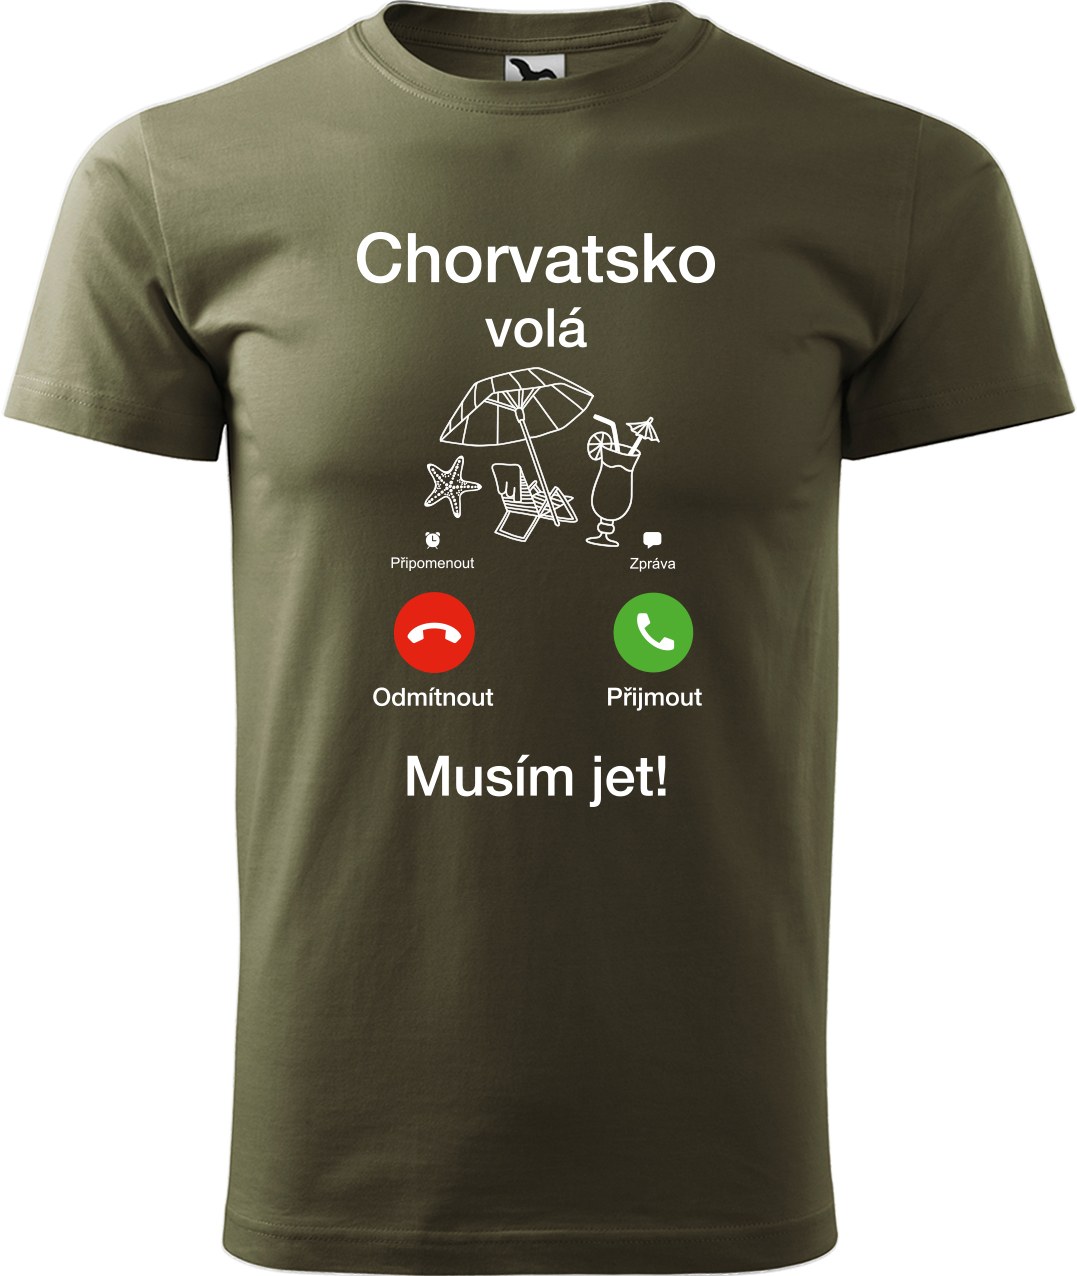 Pánské cestovatelské tričko - Chorvatsko volá - musím jet! Velikost: S, Barva: Military (69), Střih: pánský